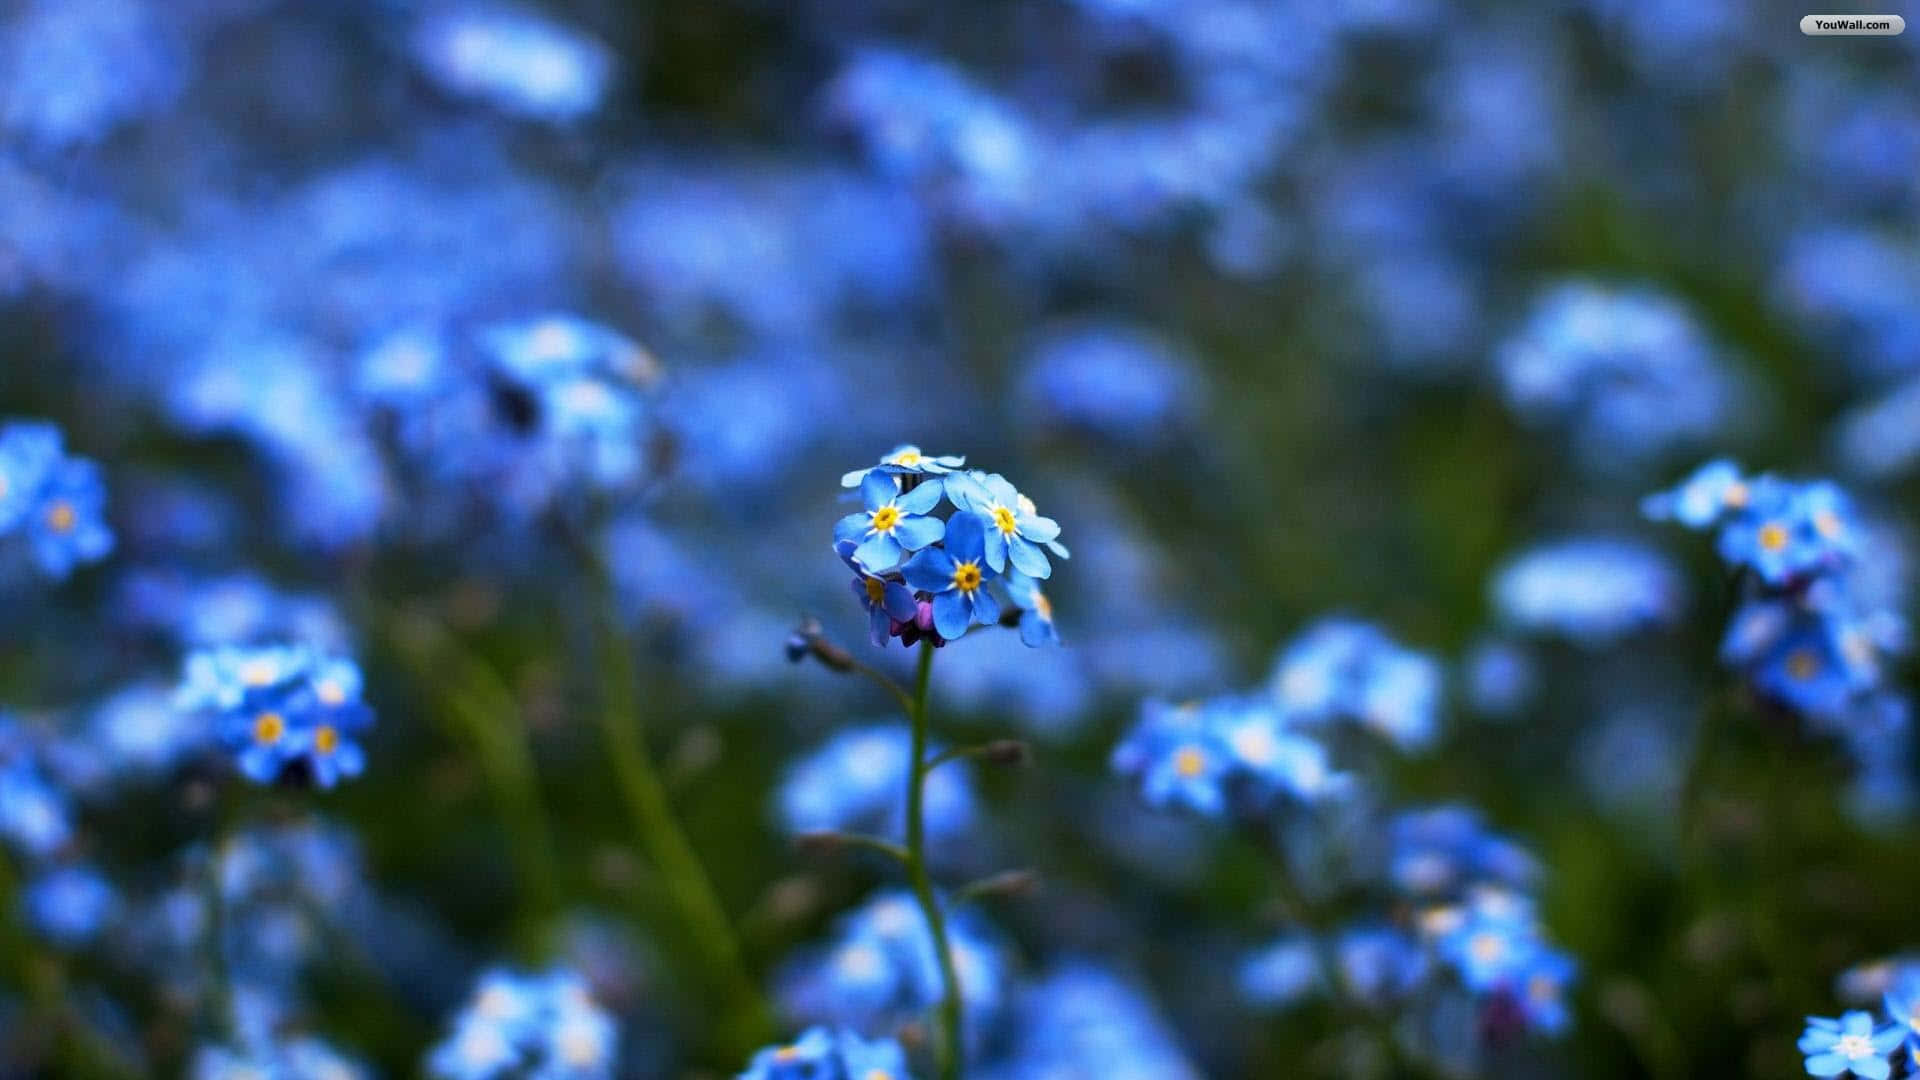 "Beautiful Blue Flower on Desktop Background" Wallpaper